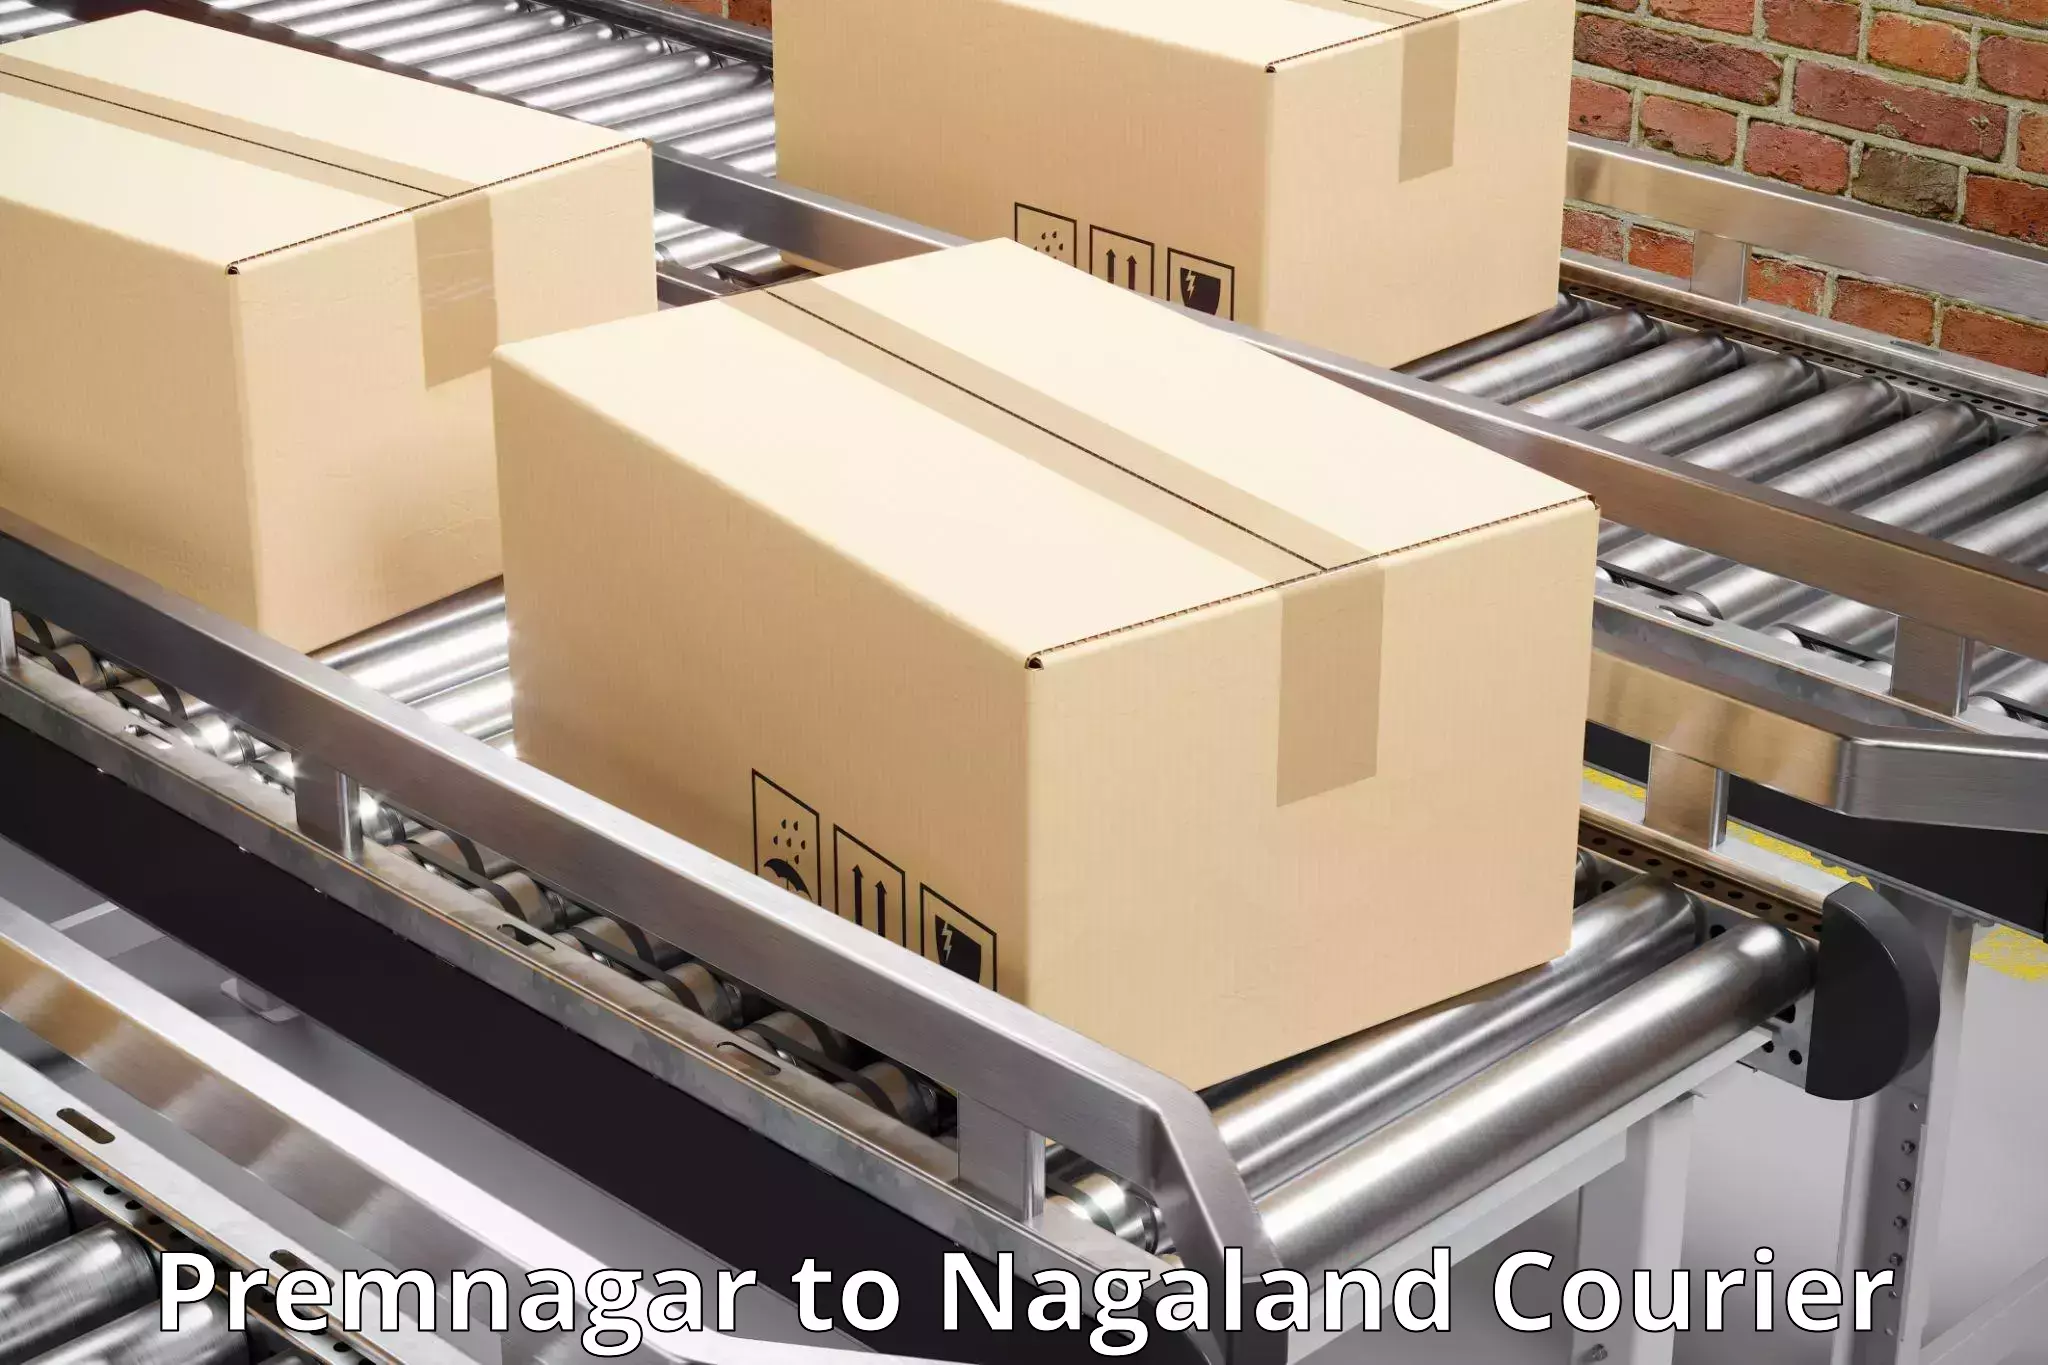 Delivery service partnership Premnagar to Nagaland